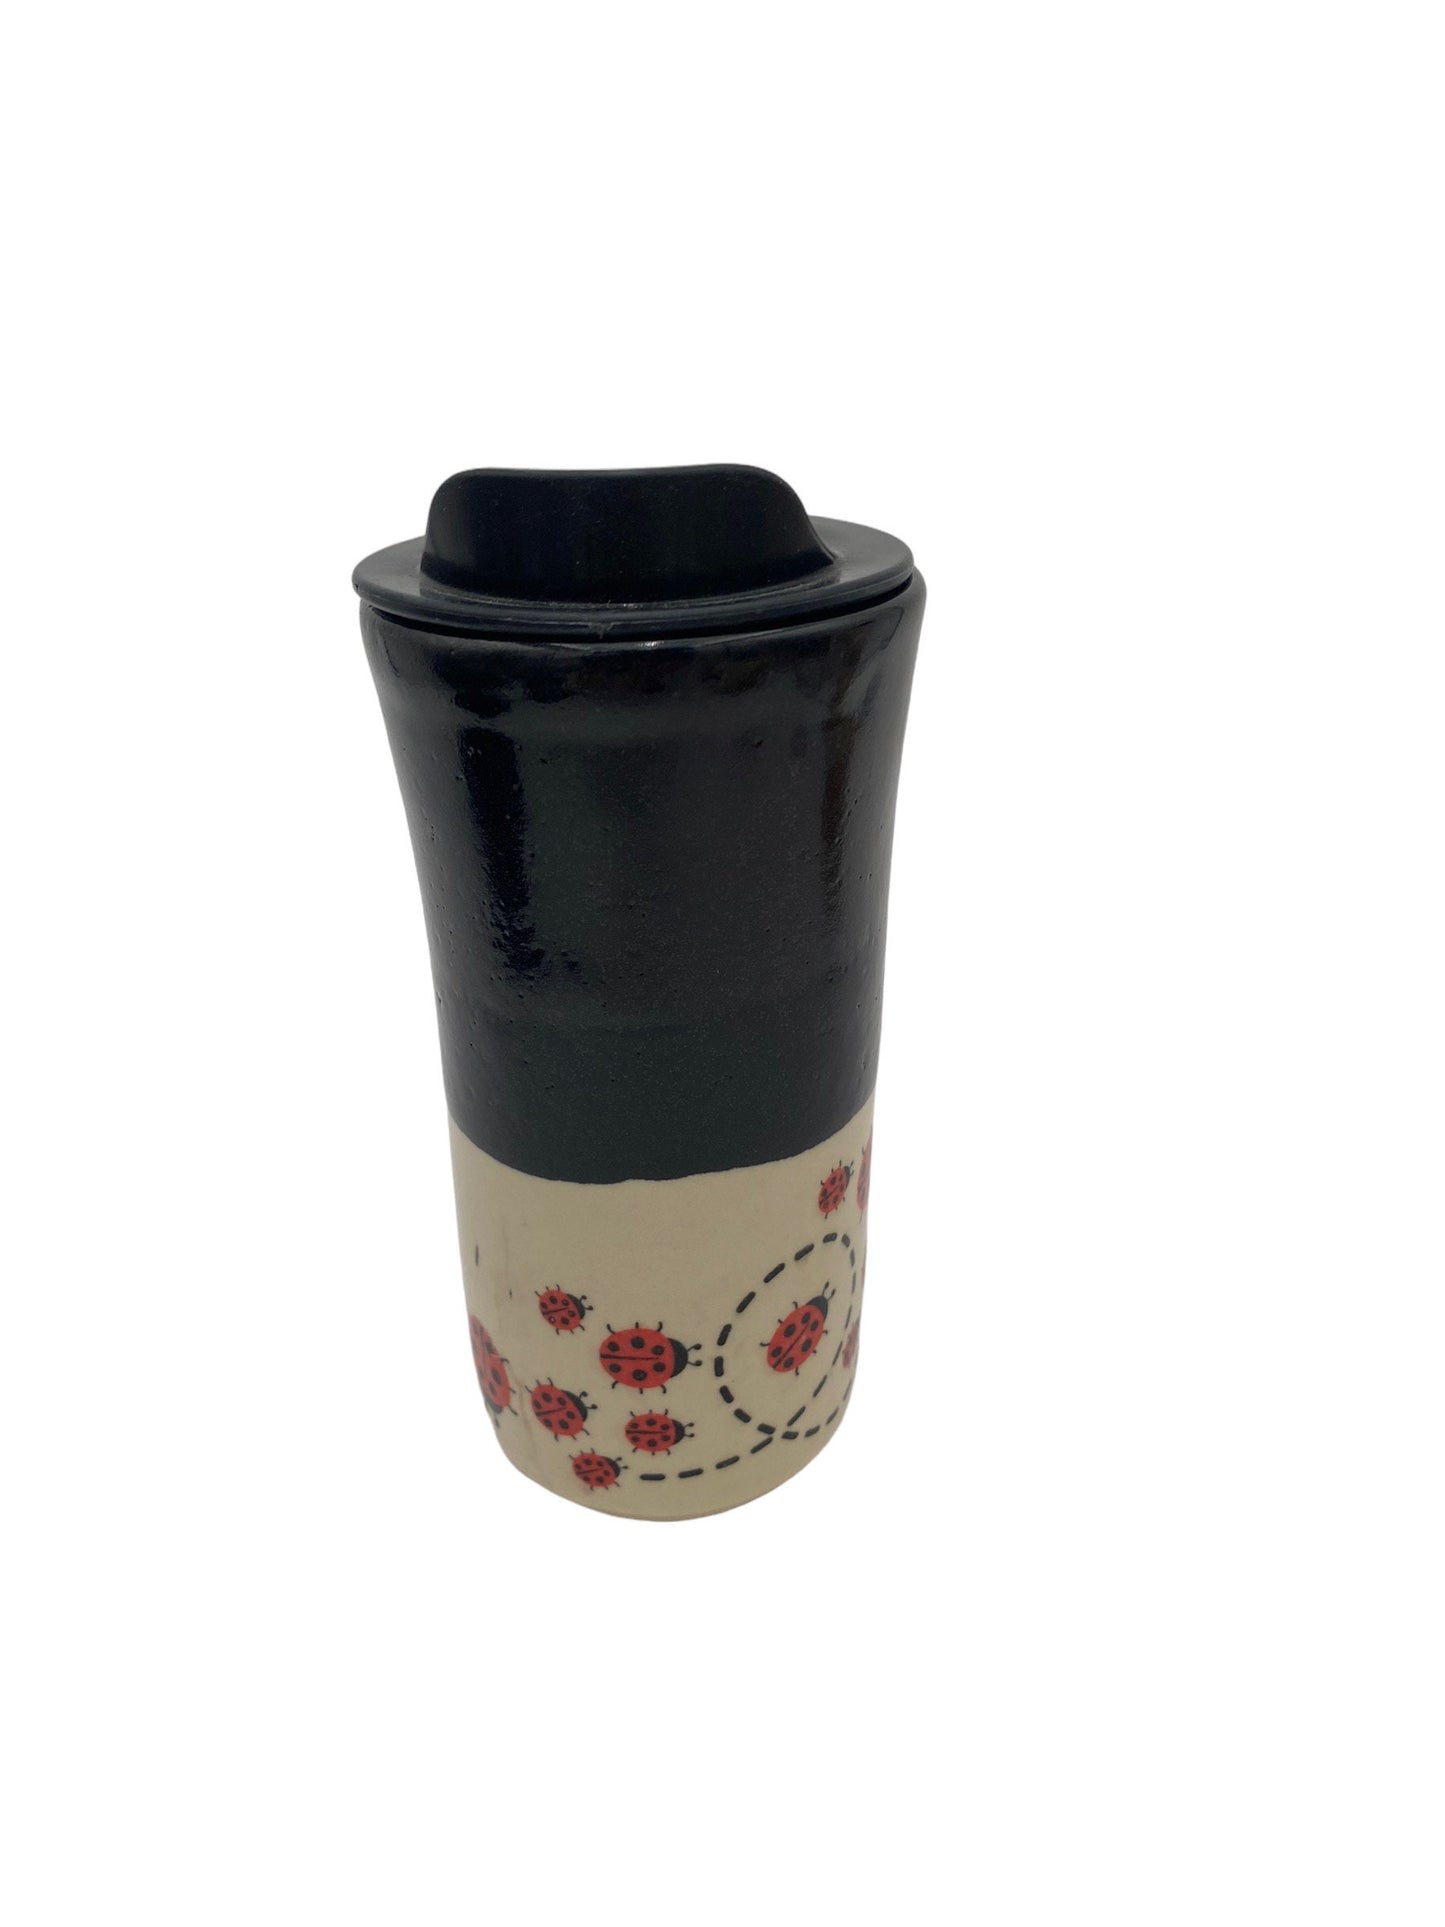 Large Lady Bug Travel Mug - Pottery Mug -  Coffee Mug - To Go Cup